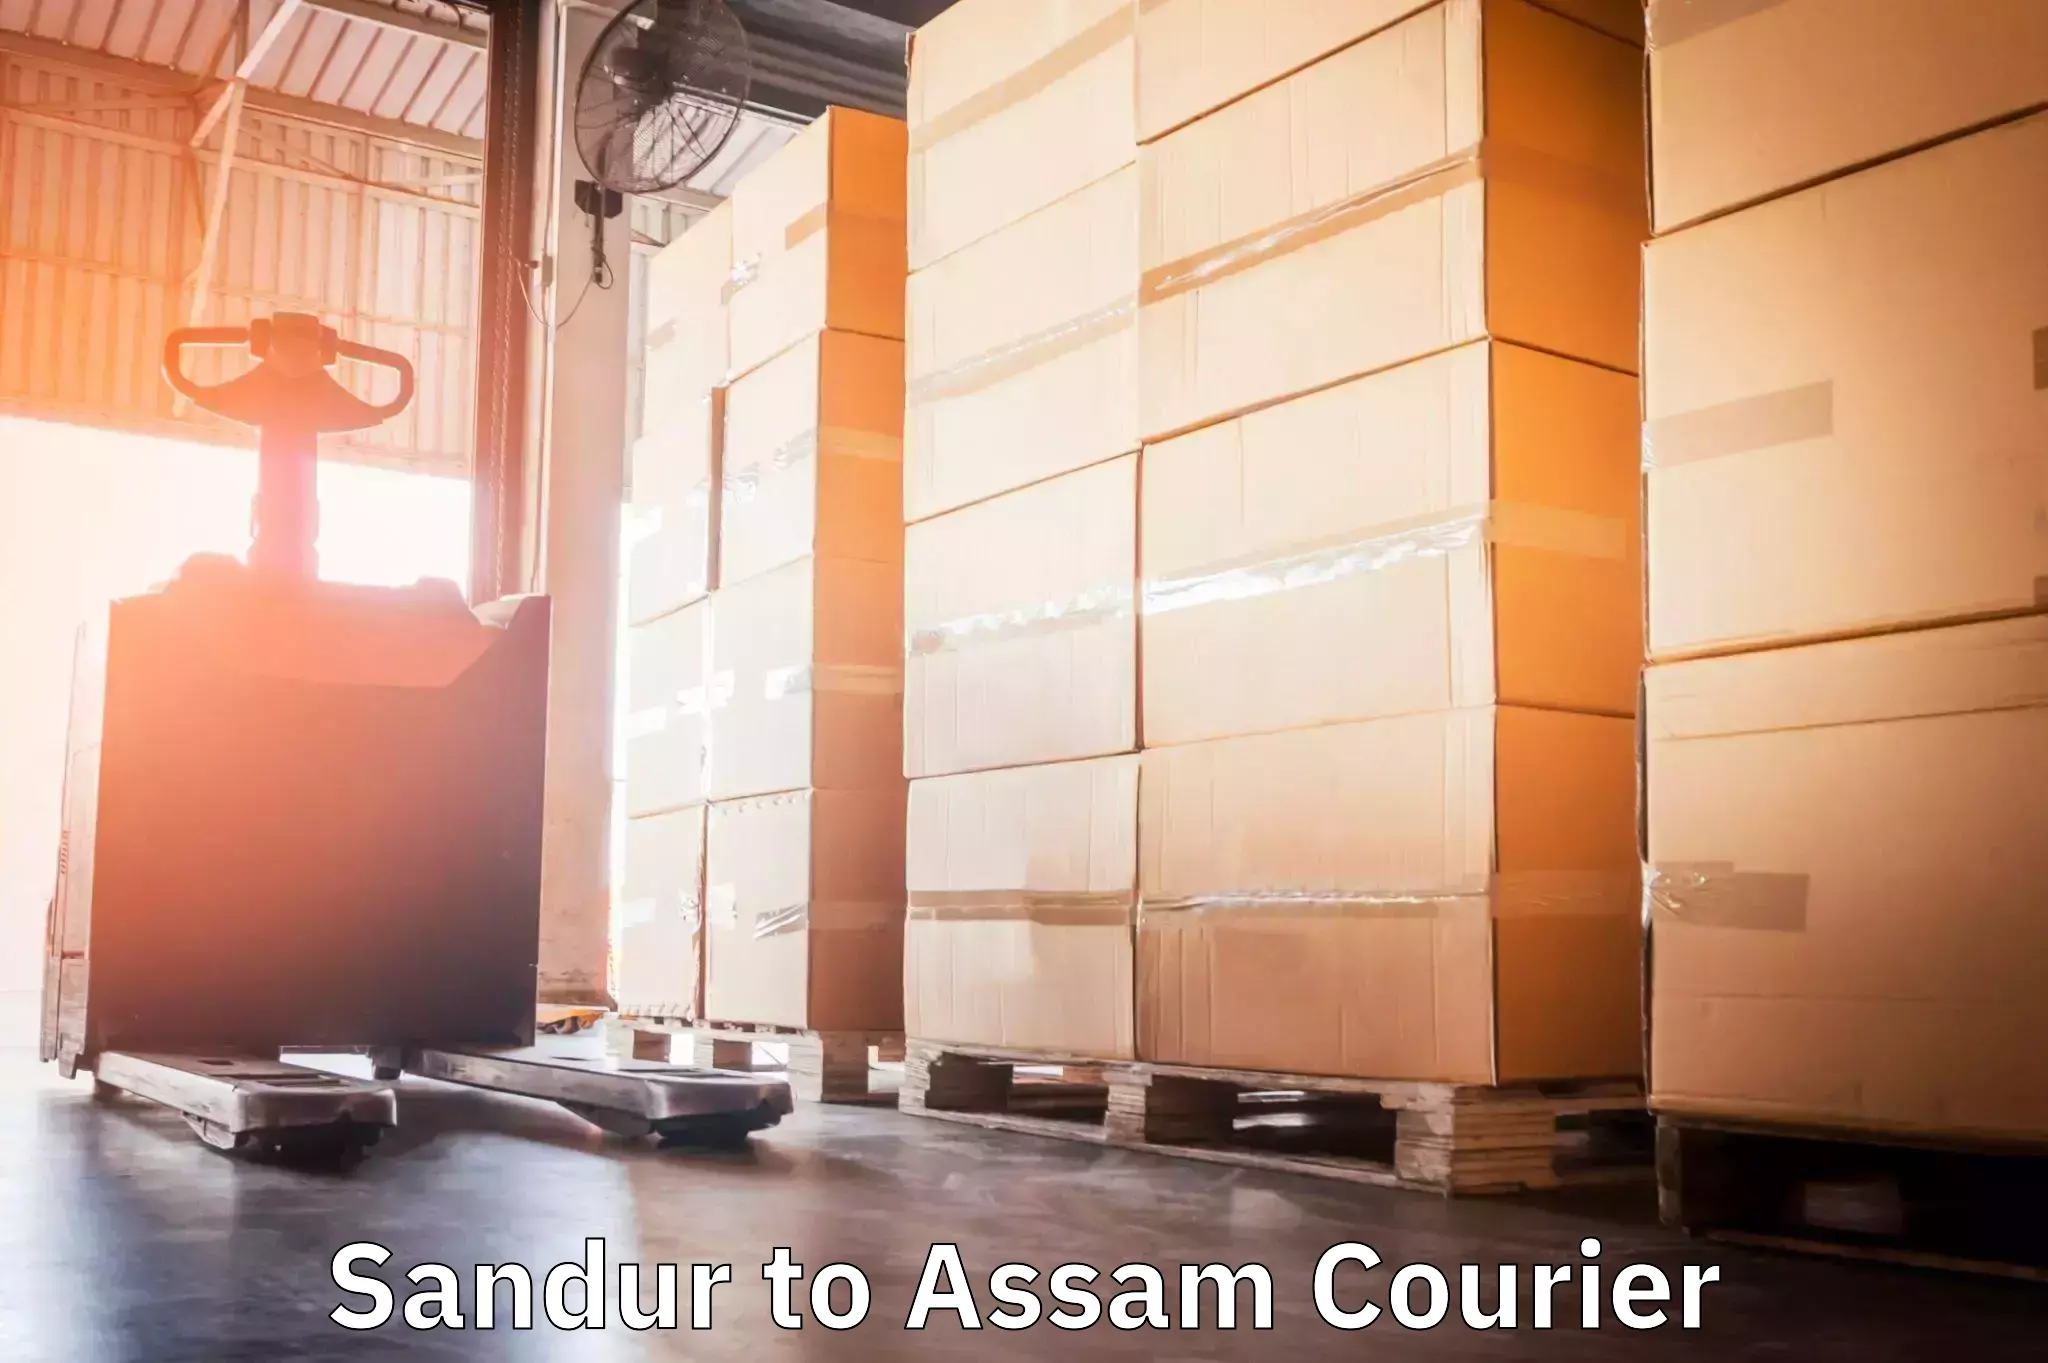 Door-to-door freight service Sandur to Assam